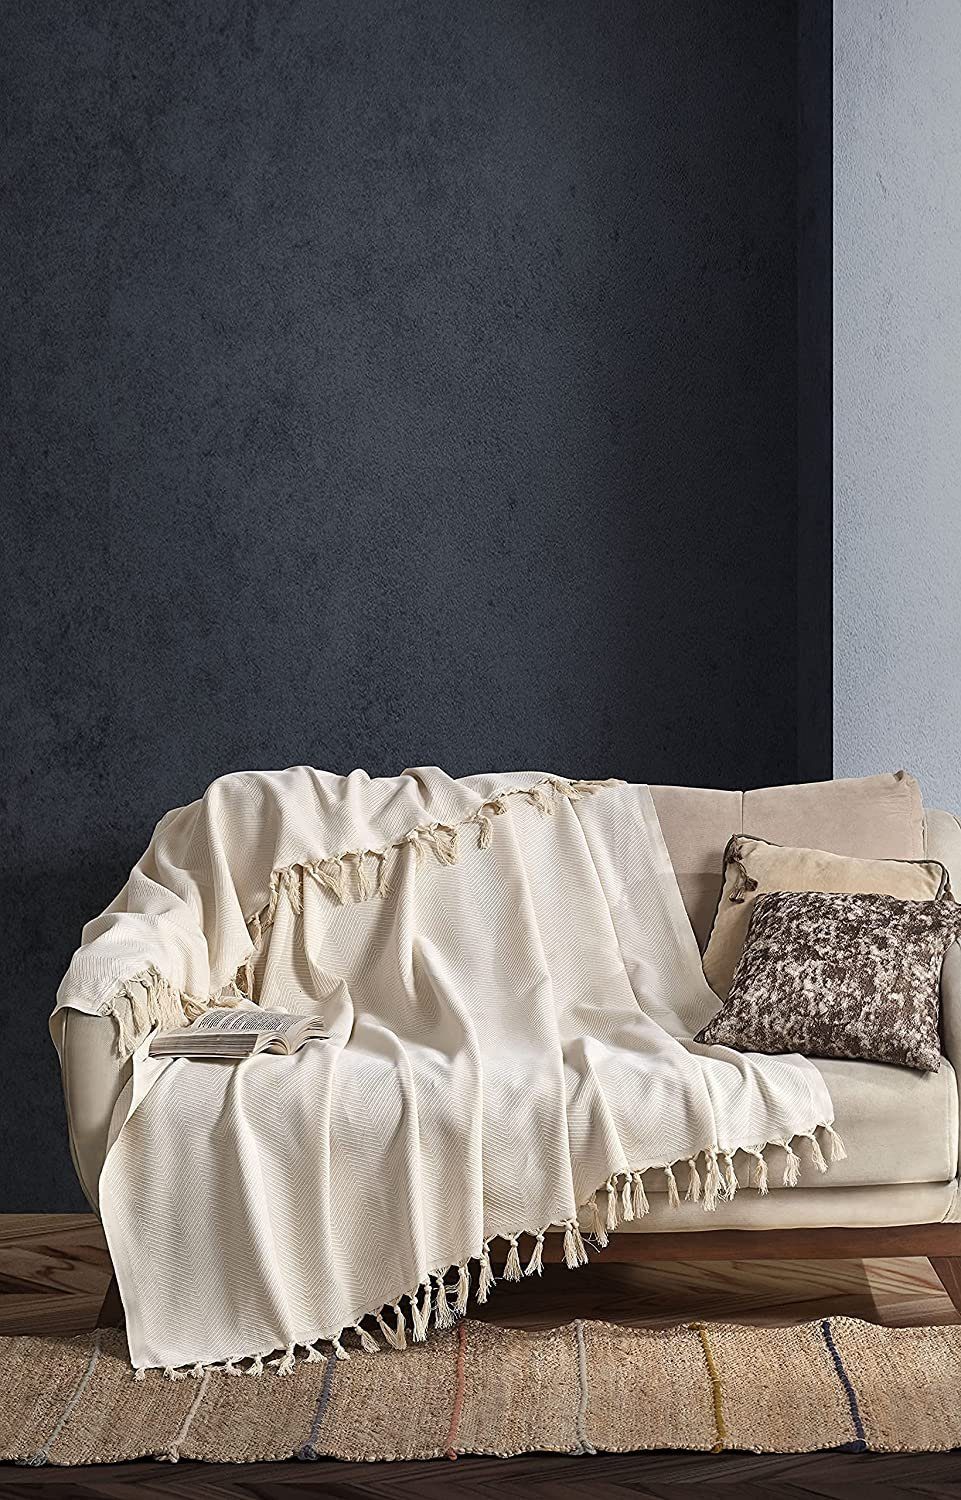 Tagesdecke BOHORIA® Tagesdecke "Tulum" - Bettüberwurf, extra-groß 170 x 230 cm, BOHORIA, Kann für Bett, Sofa, Stuhl, Outdoor und Indoor genutzt werden. Natural Cotton